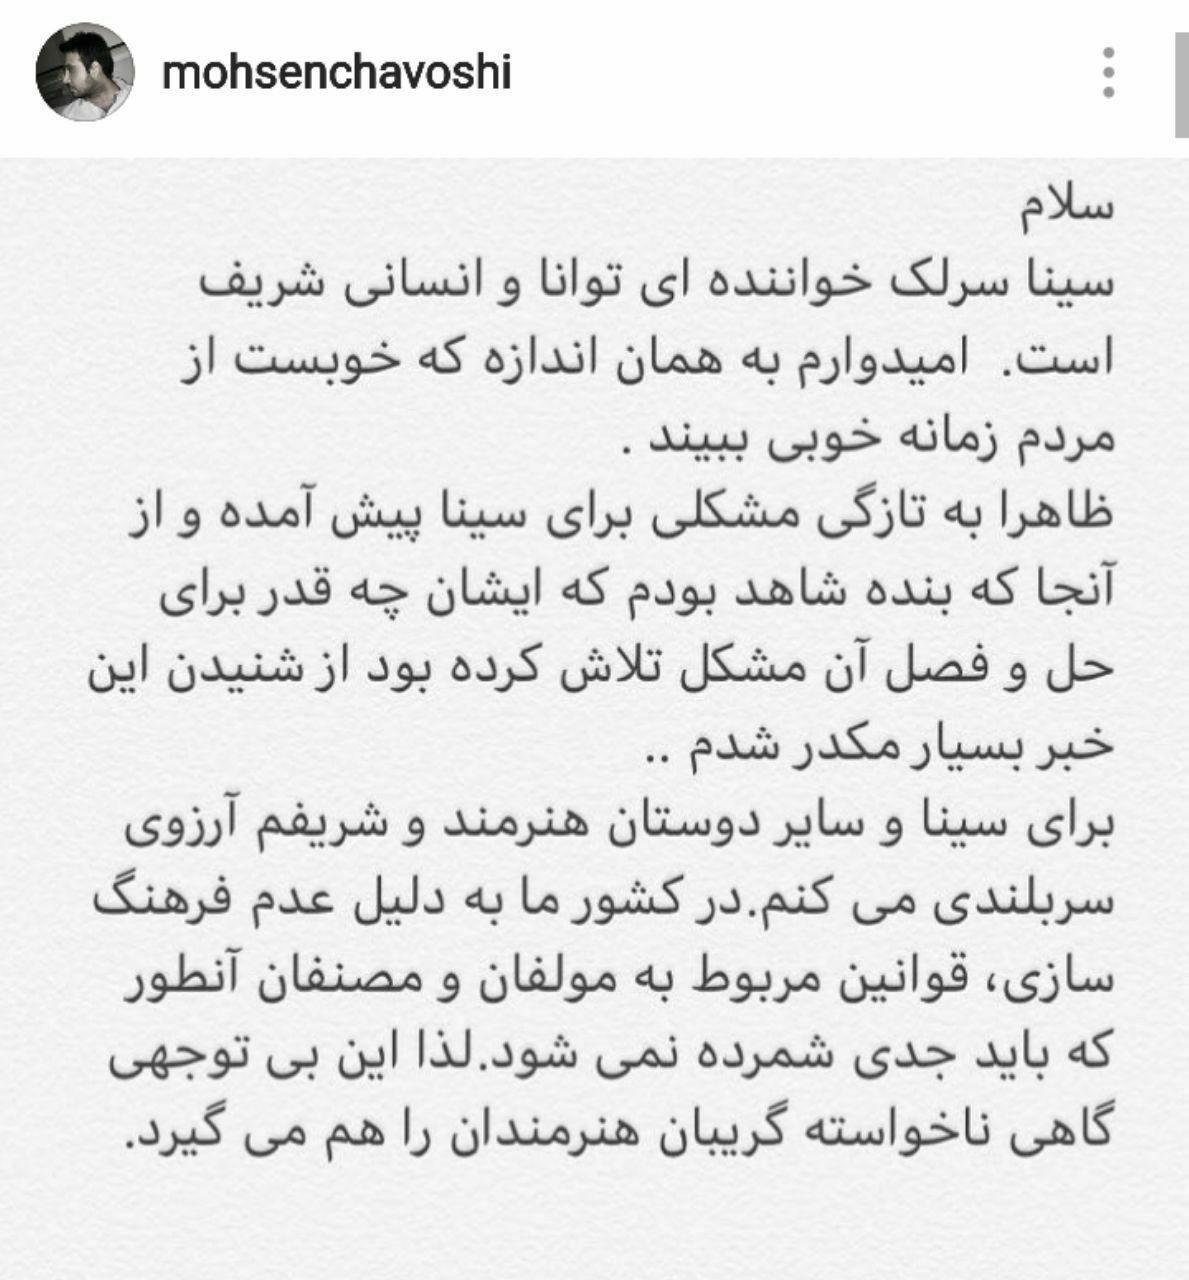 واکنش اینستاگرامی محسن چاوشی به خبر محکومیت سینا سرلک